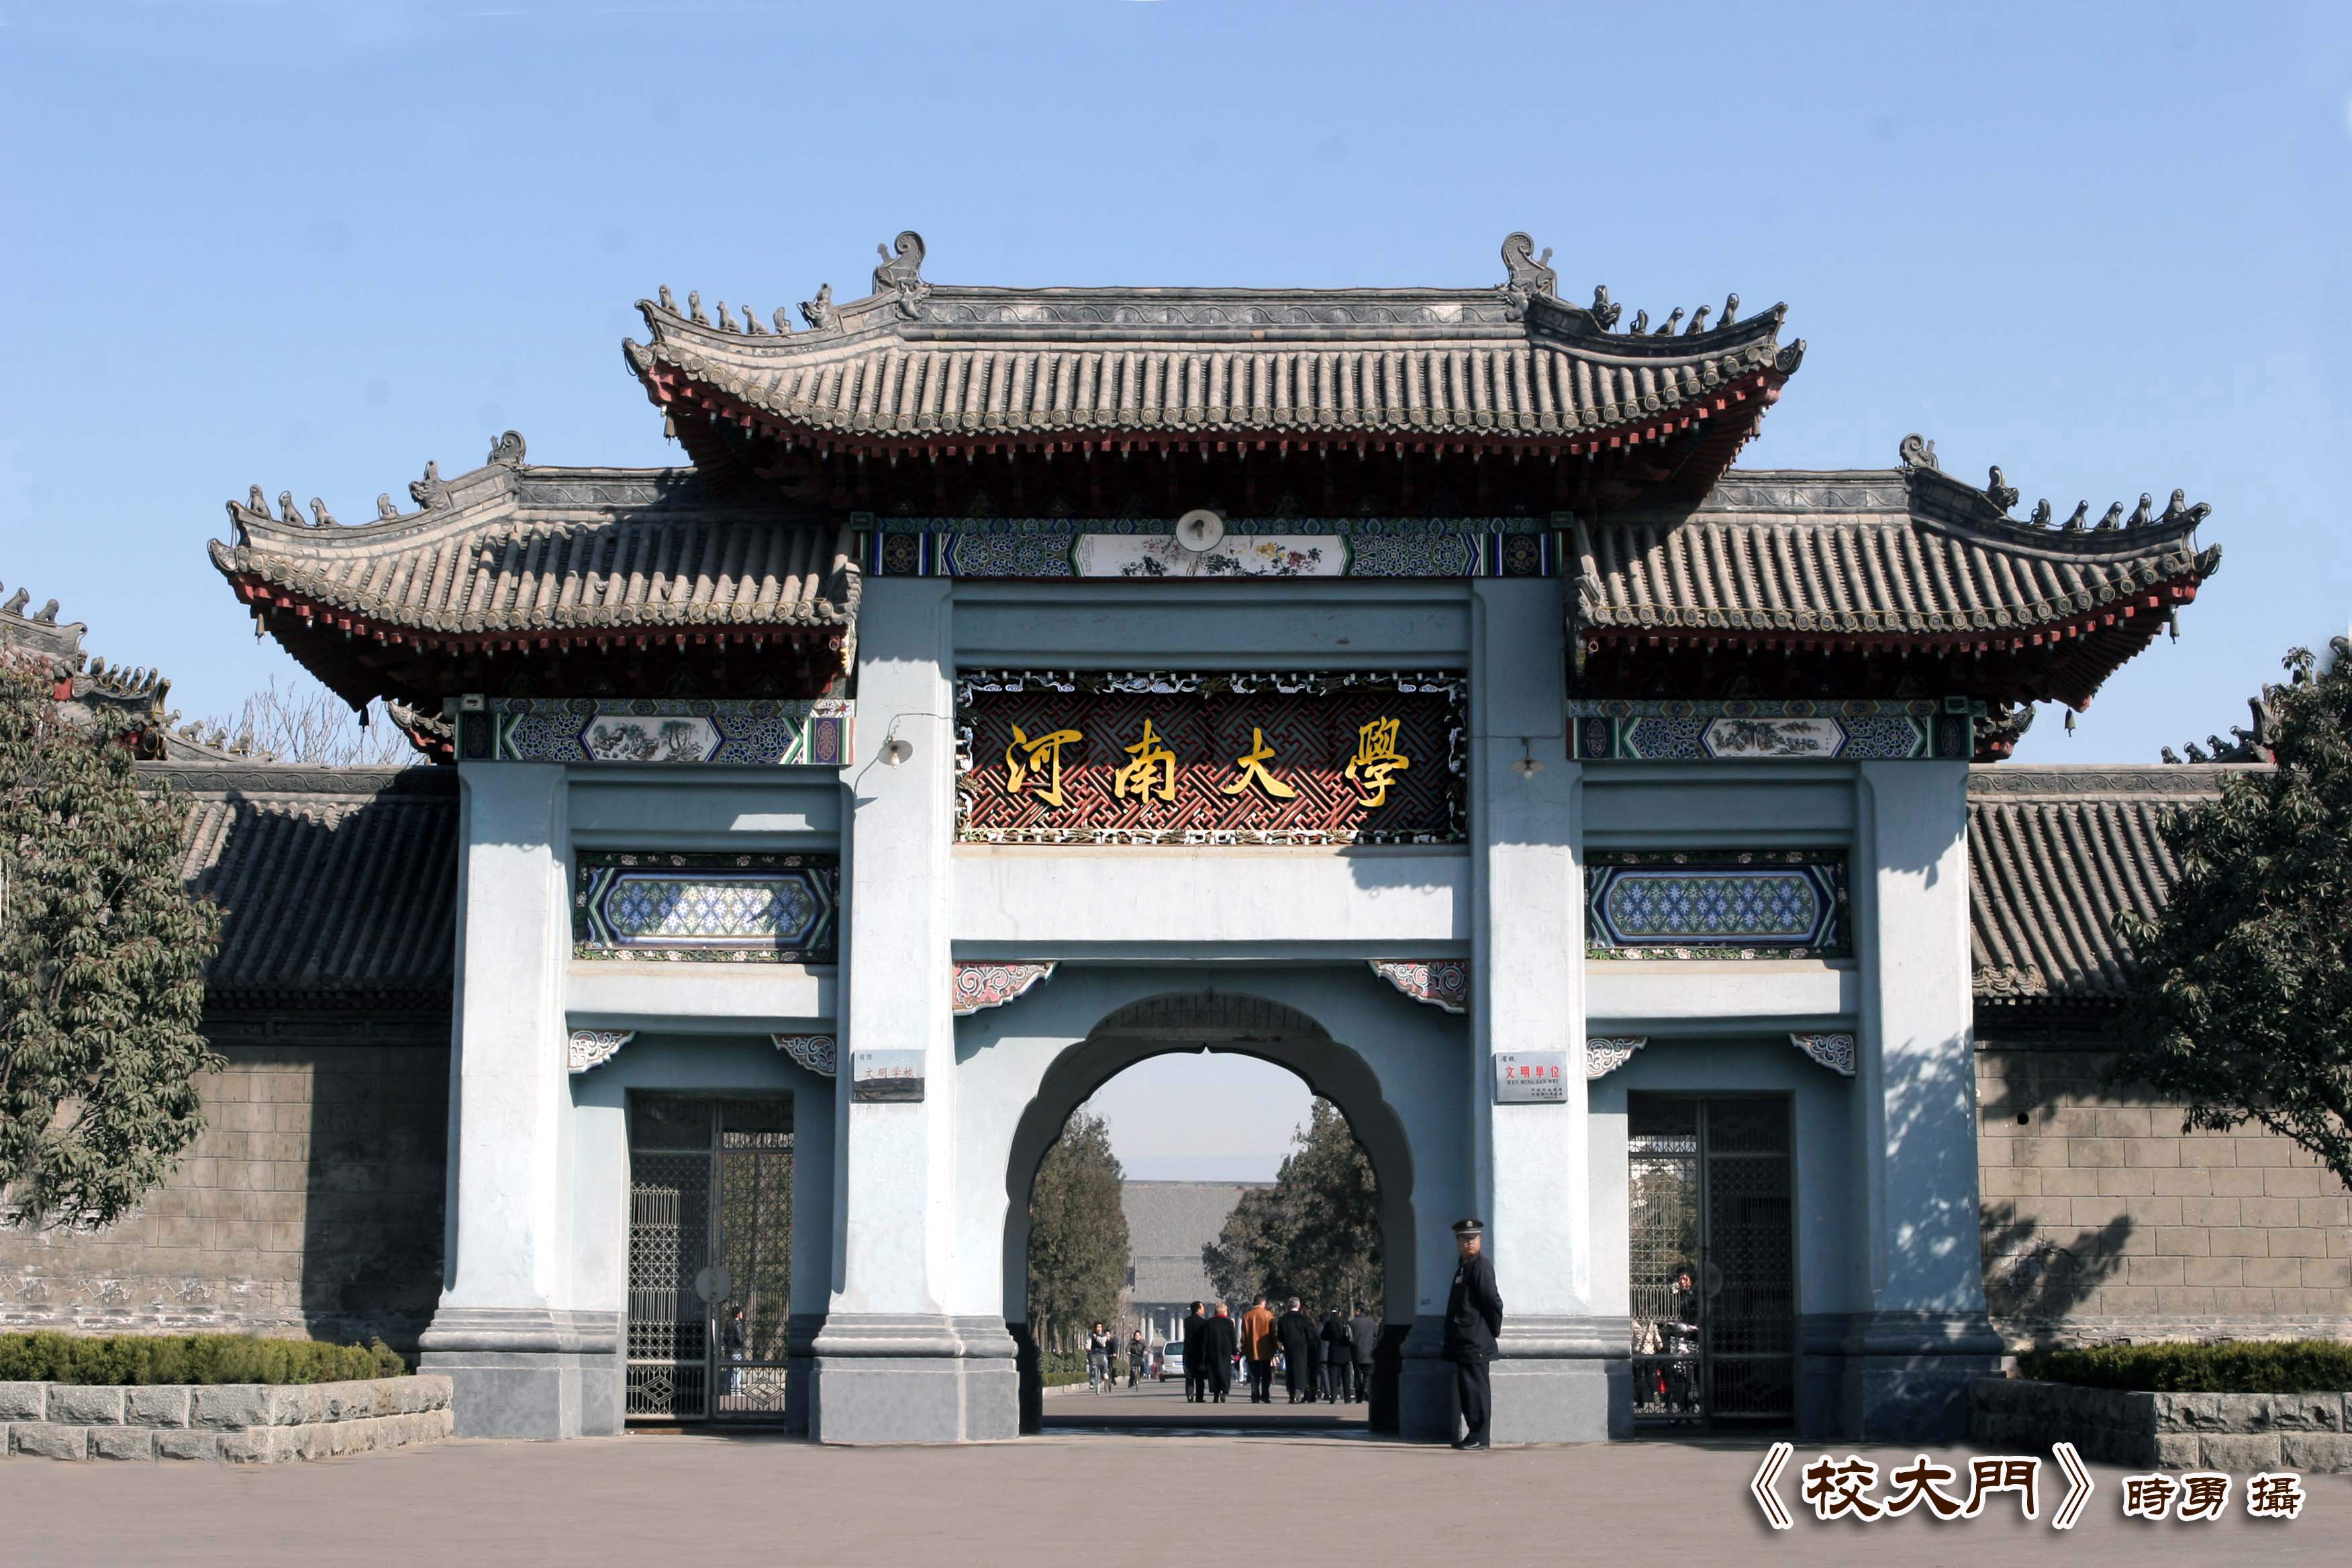 中国高校校门设计大盘点 分享十款校门设计效果图-沃斯派家装资讯